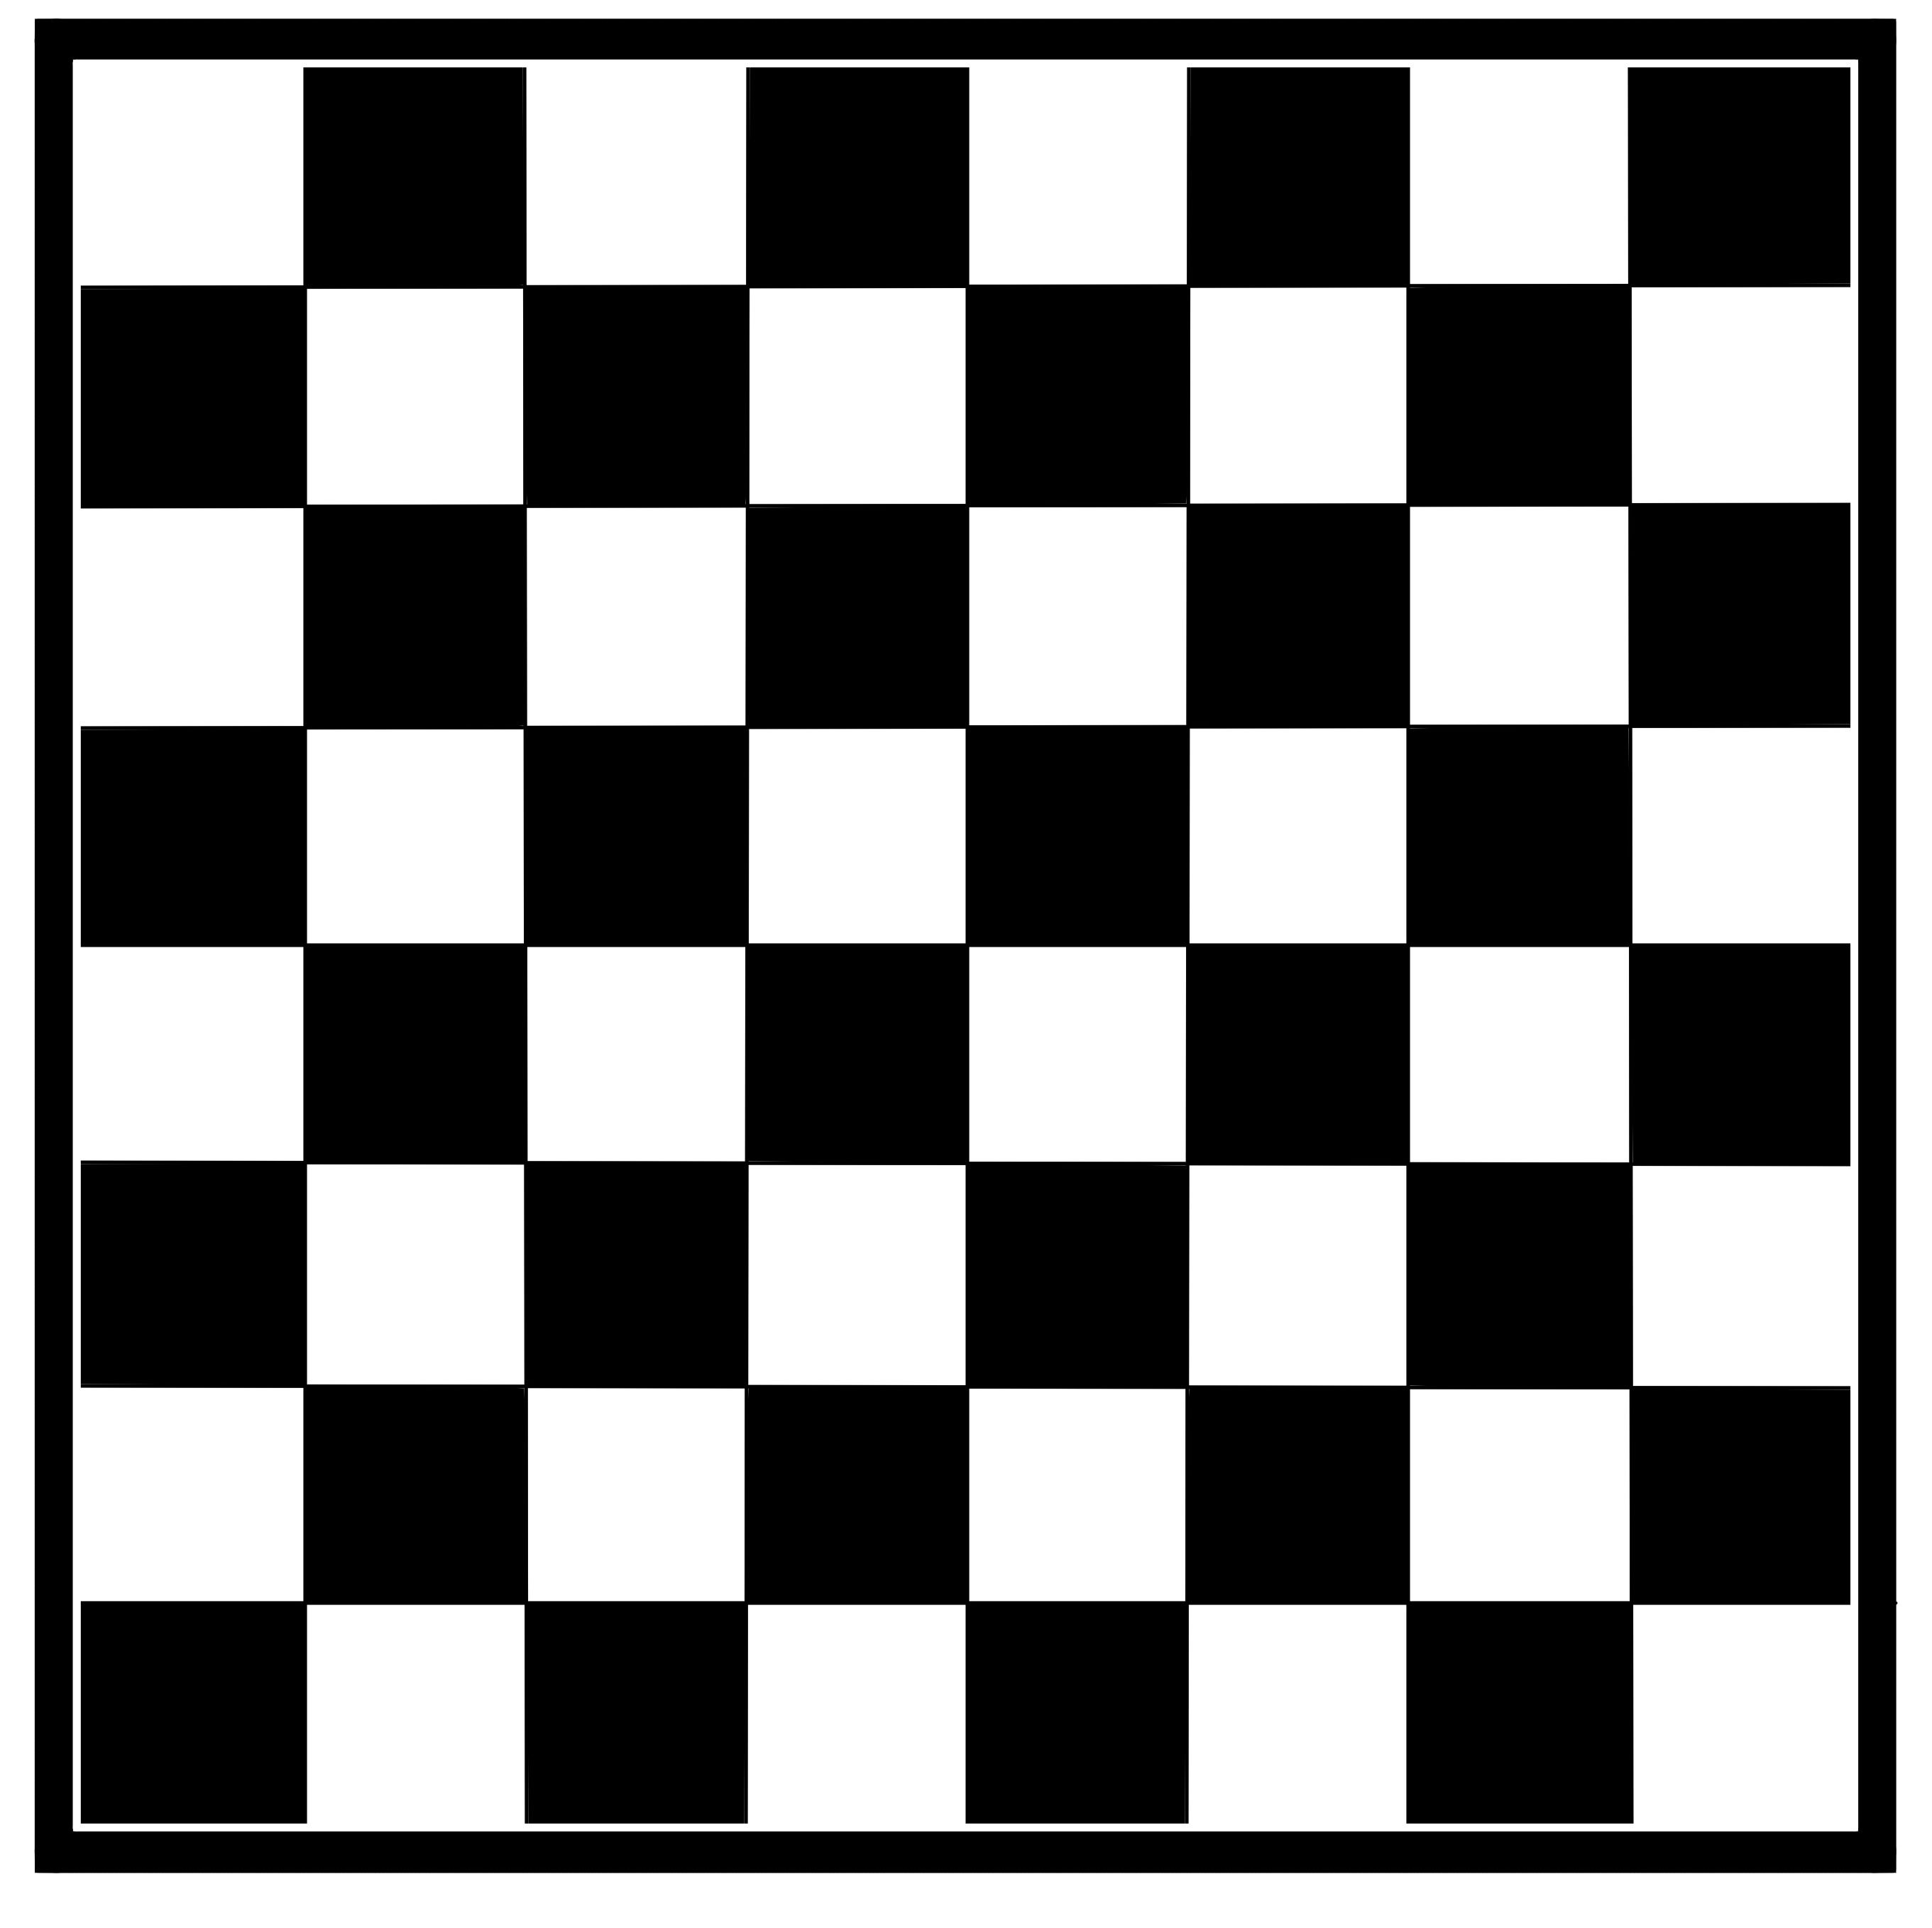 举报 国际象棋棋盘,黑白图像素材